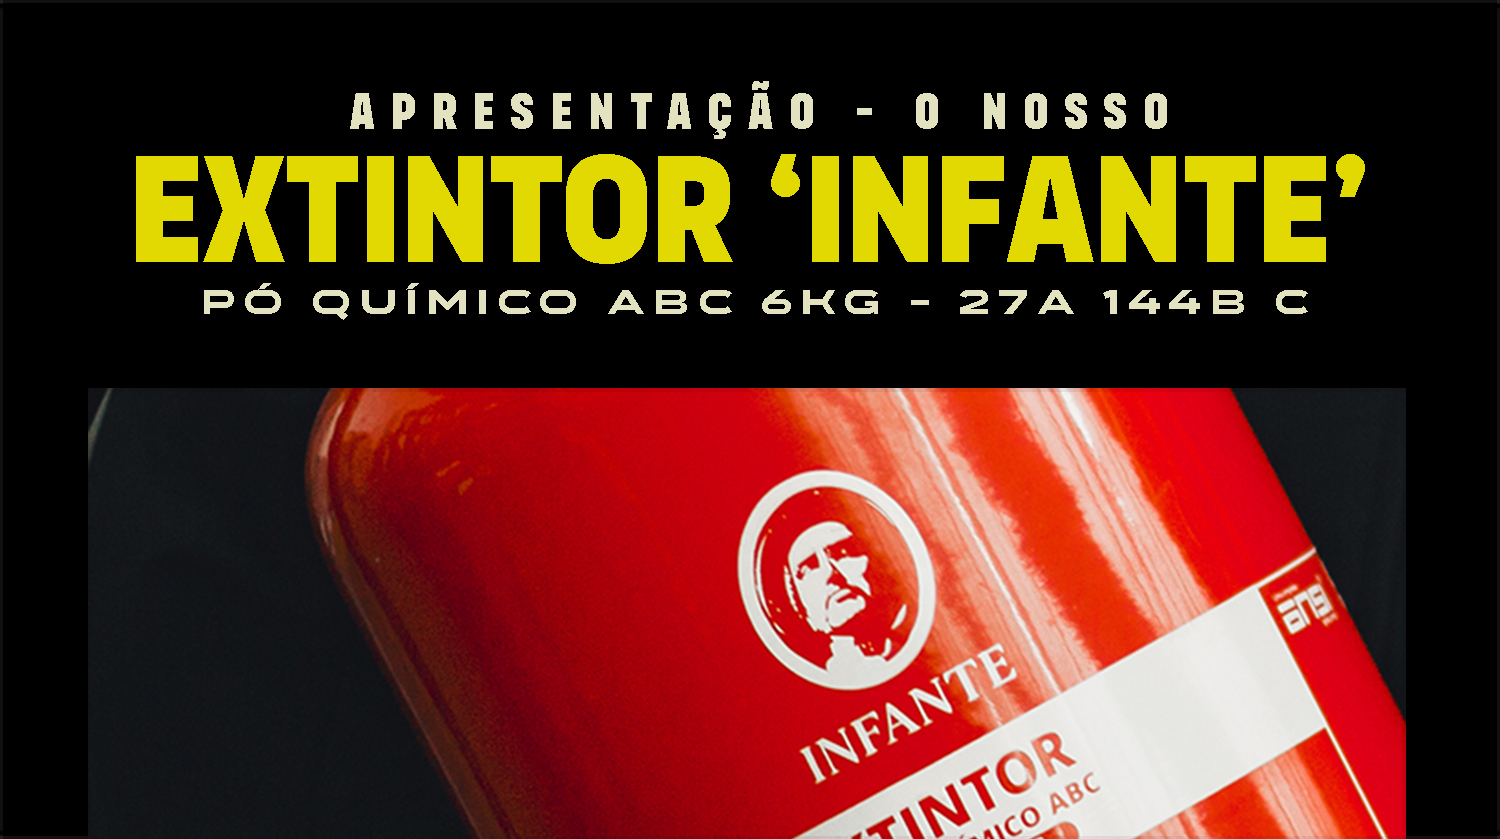 O 'Infante' - Pó Químico ABC 6Kg